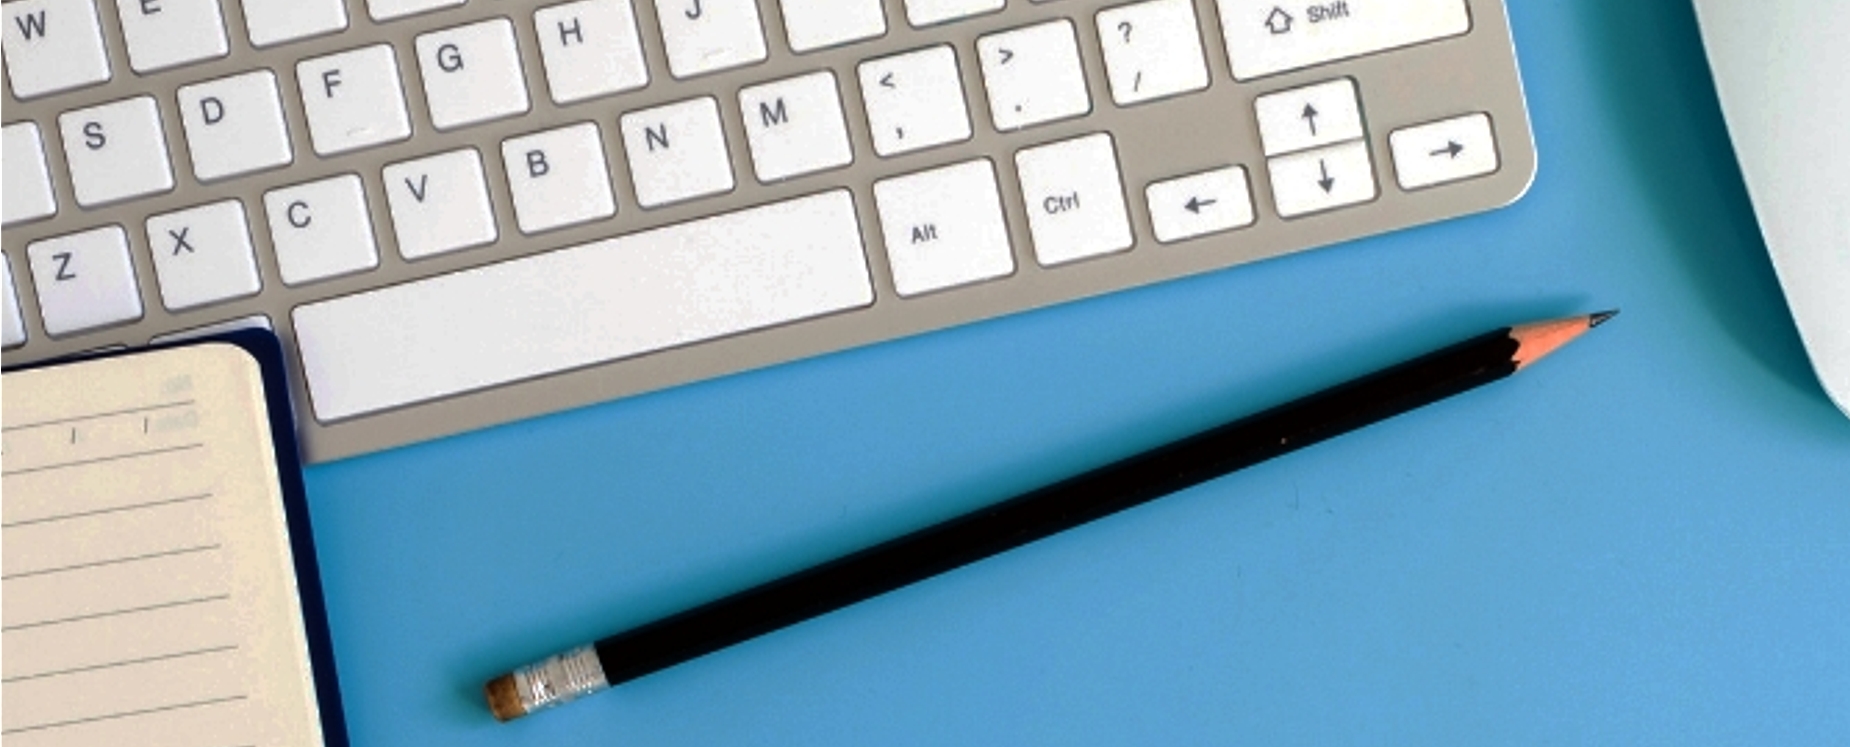 Ilustracja dekoracyjna. Klawiatura komputerowa, ołówek notes i mysz komputerowa na podstawie koloru niebieskiego.